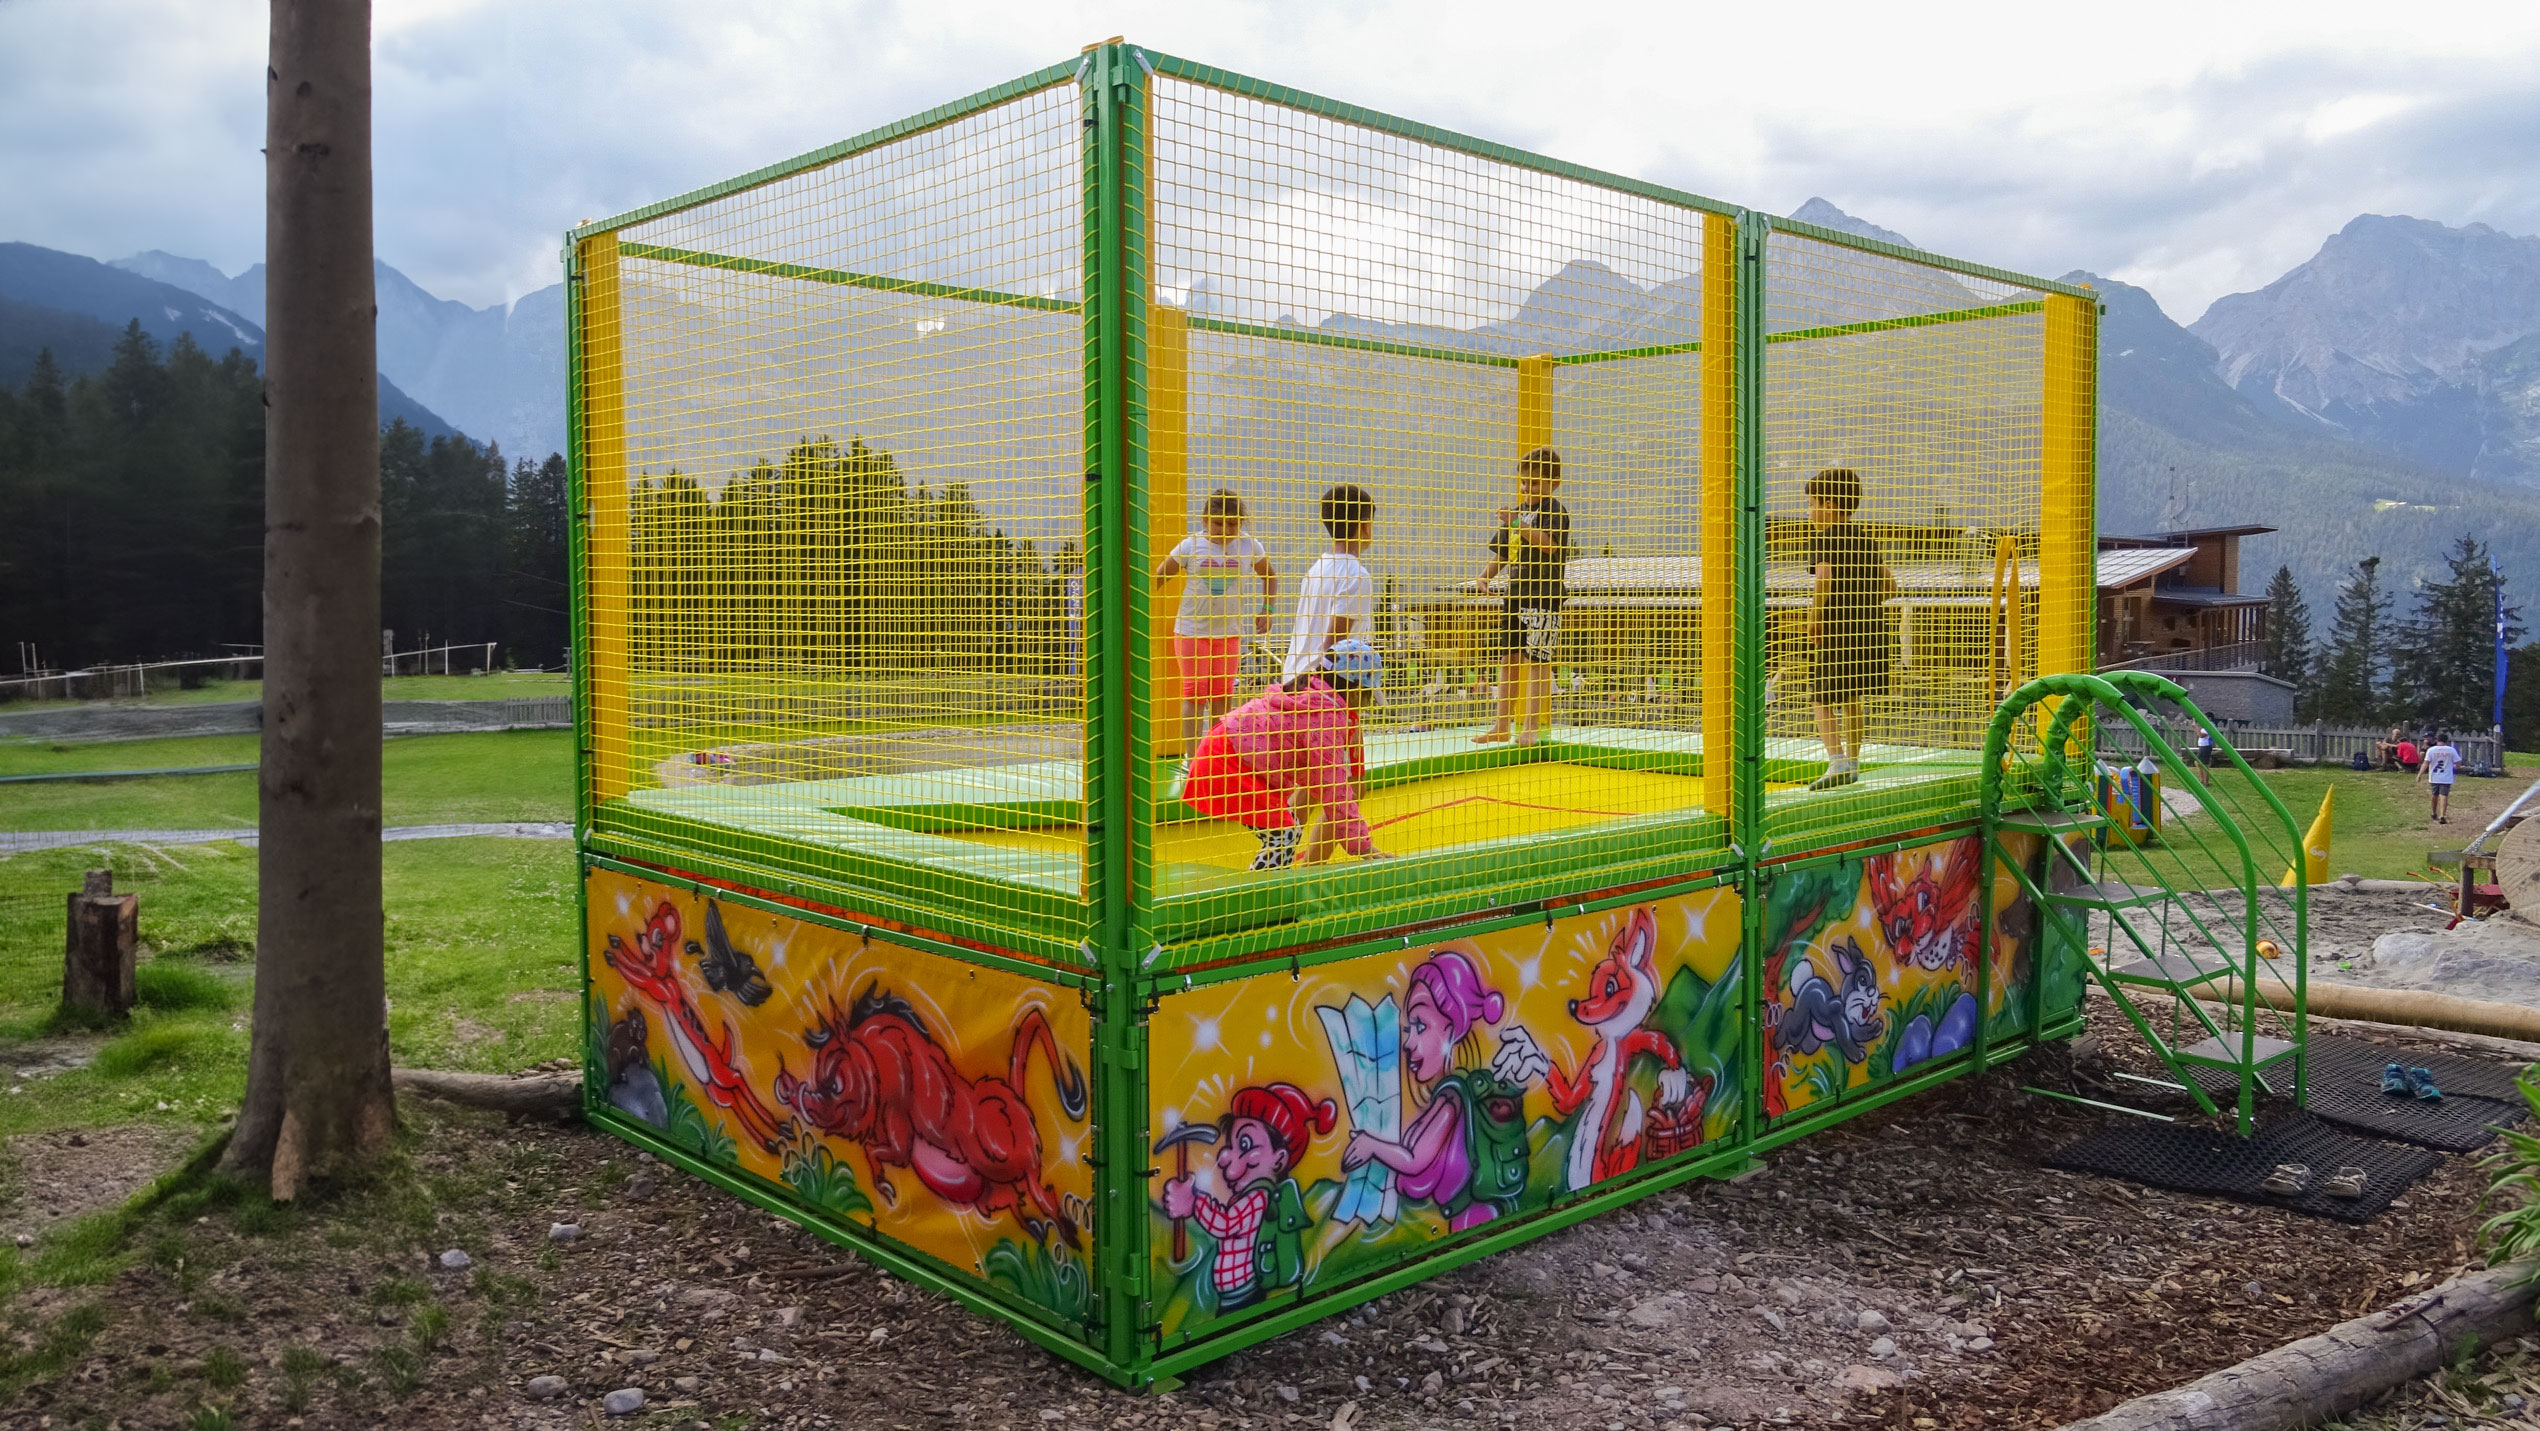 Tappeto elastico singolo per parco giochi - Single trampoline for baby park